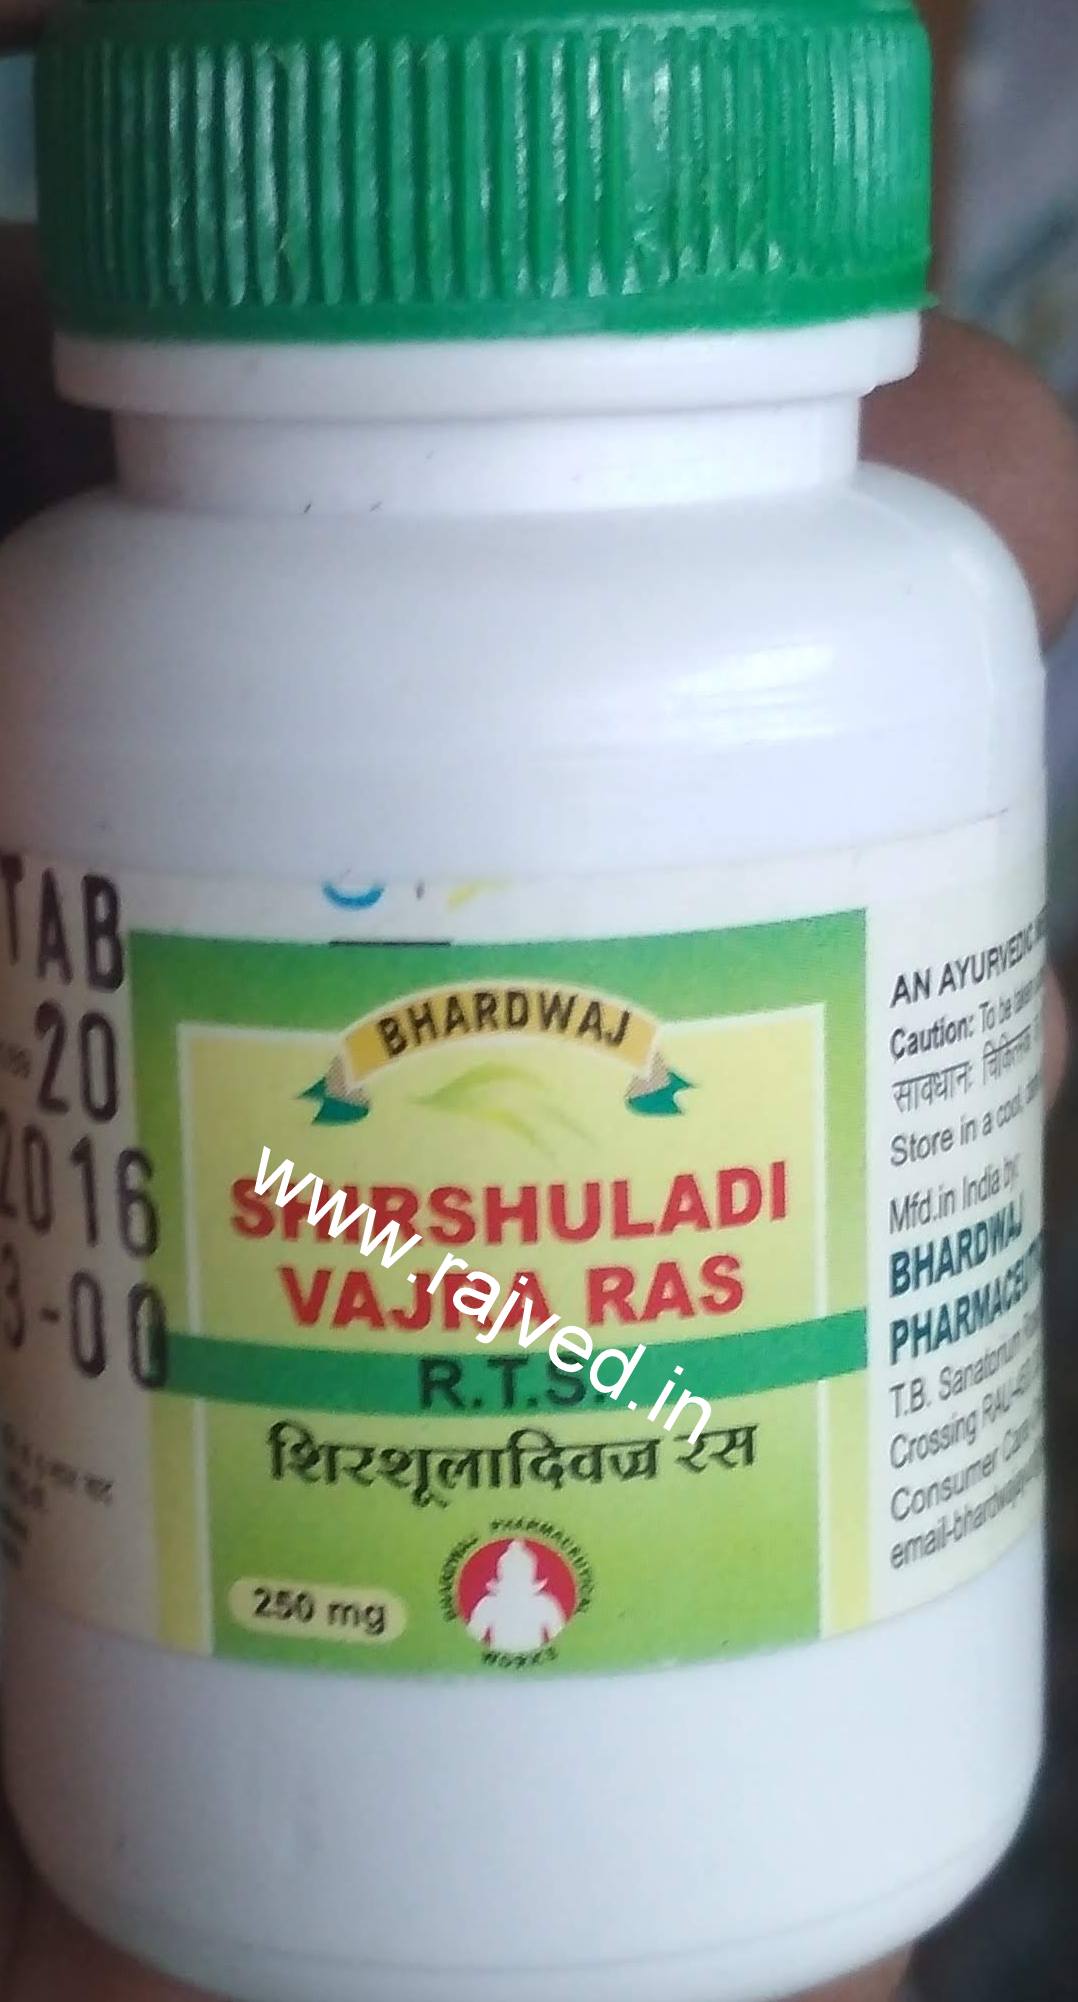 shirshuladivajra ras 1kg upto 20% off free shipping bhardwaj pharmaceuticals indore